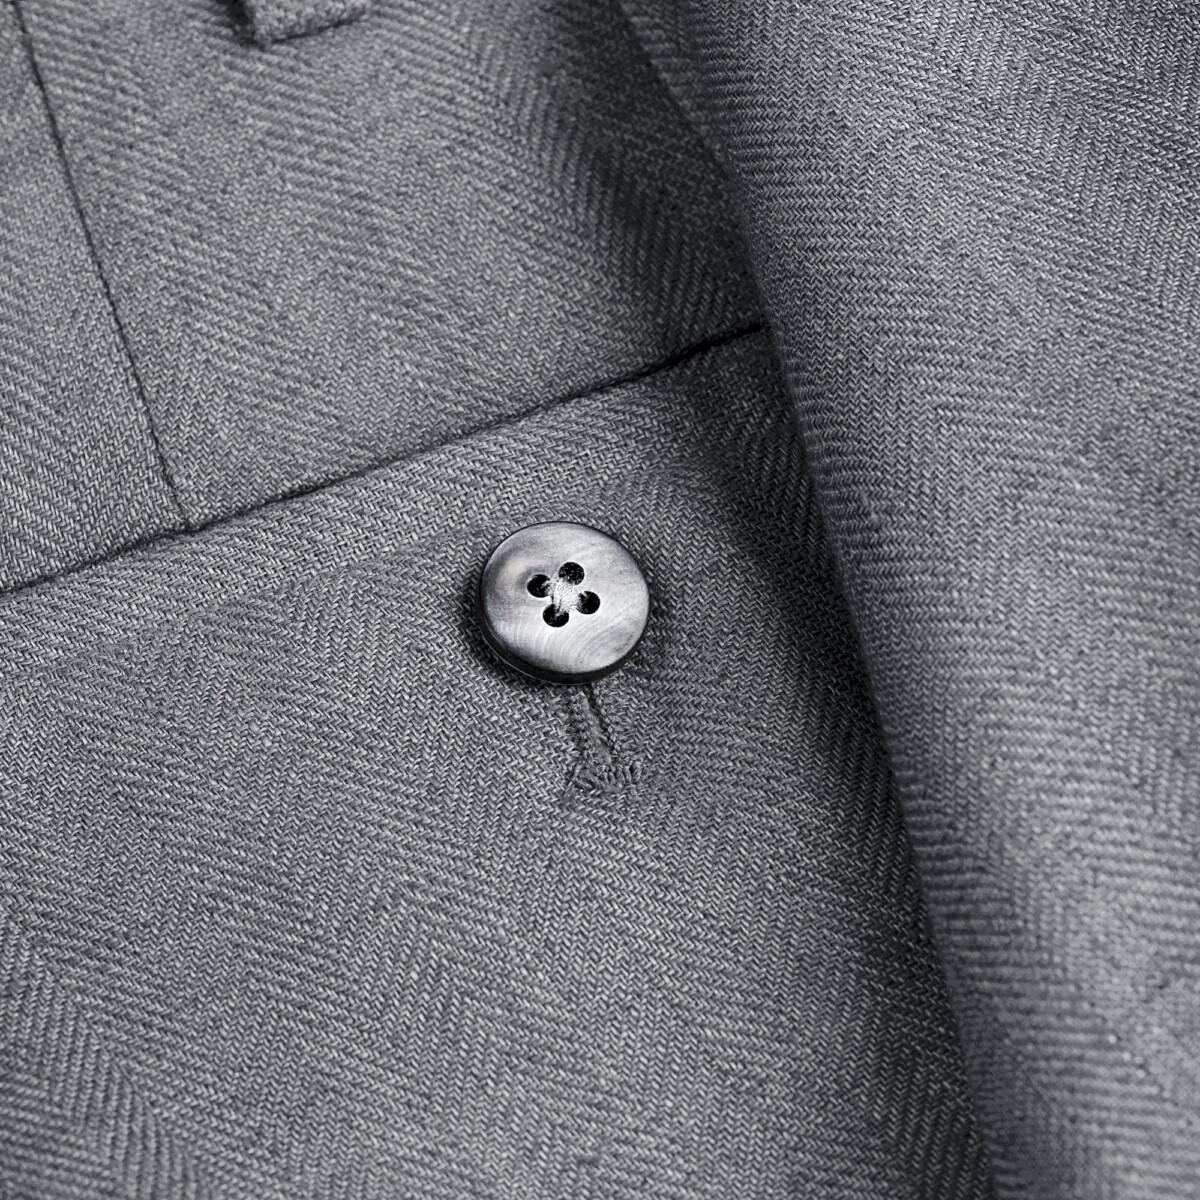 Pantalone Brezza 100% capri for man linen dark grey trouser detail